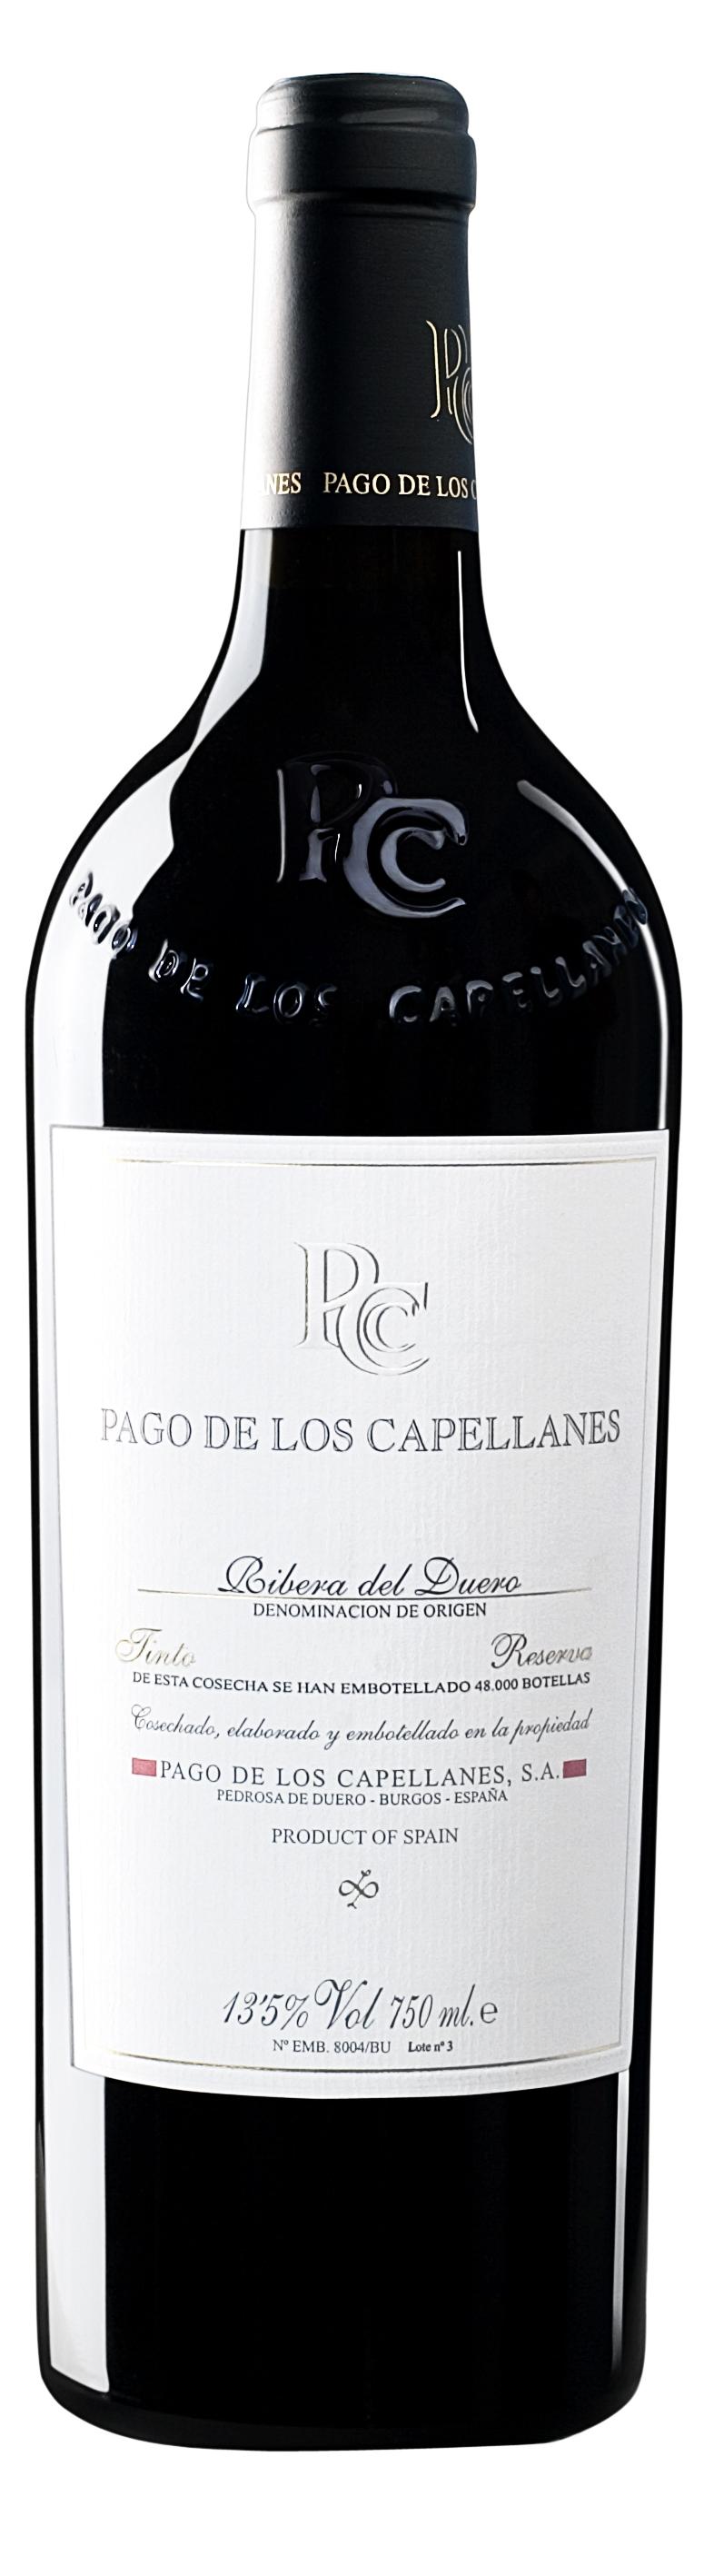 Un gran vino con experiencia RESERVA 2008 87 puntos 89 puntos de Duero (Burgos). 91 puntos 93 puntos Después de una vendimia seleccionada se lleva a depósitos de 20.